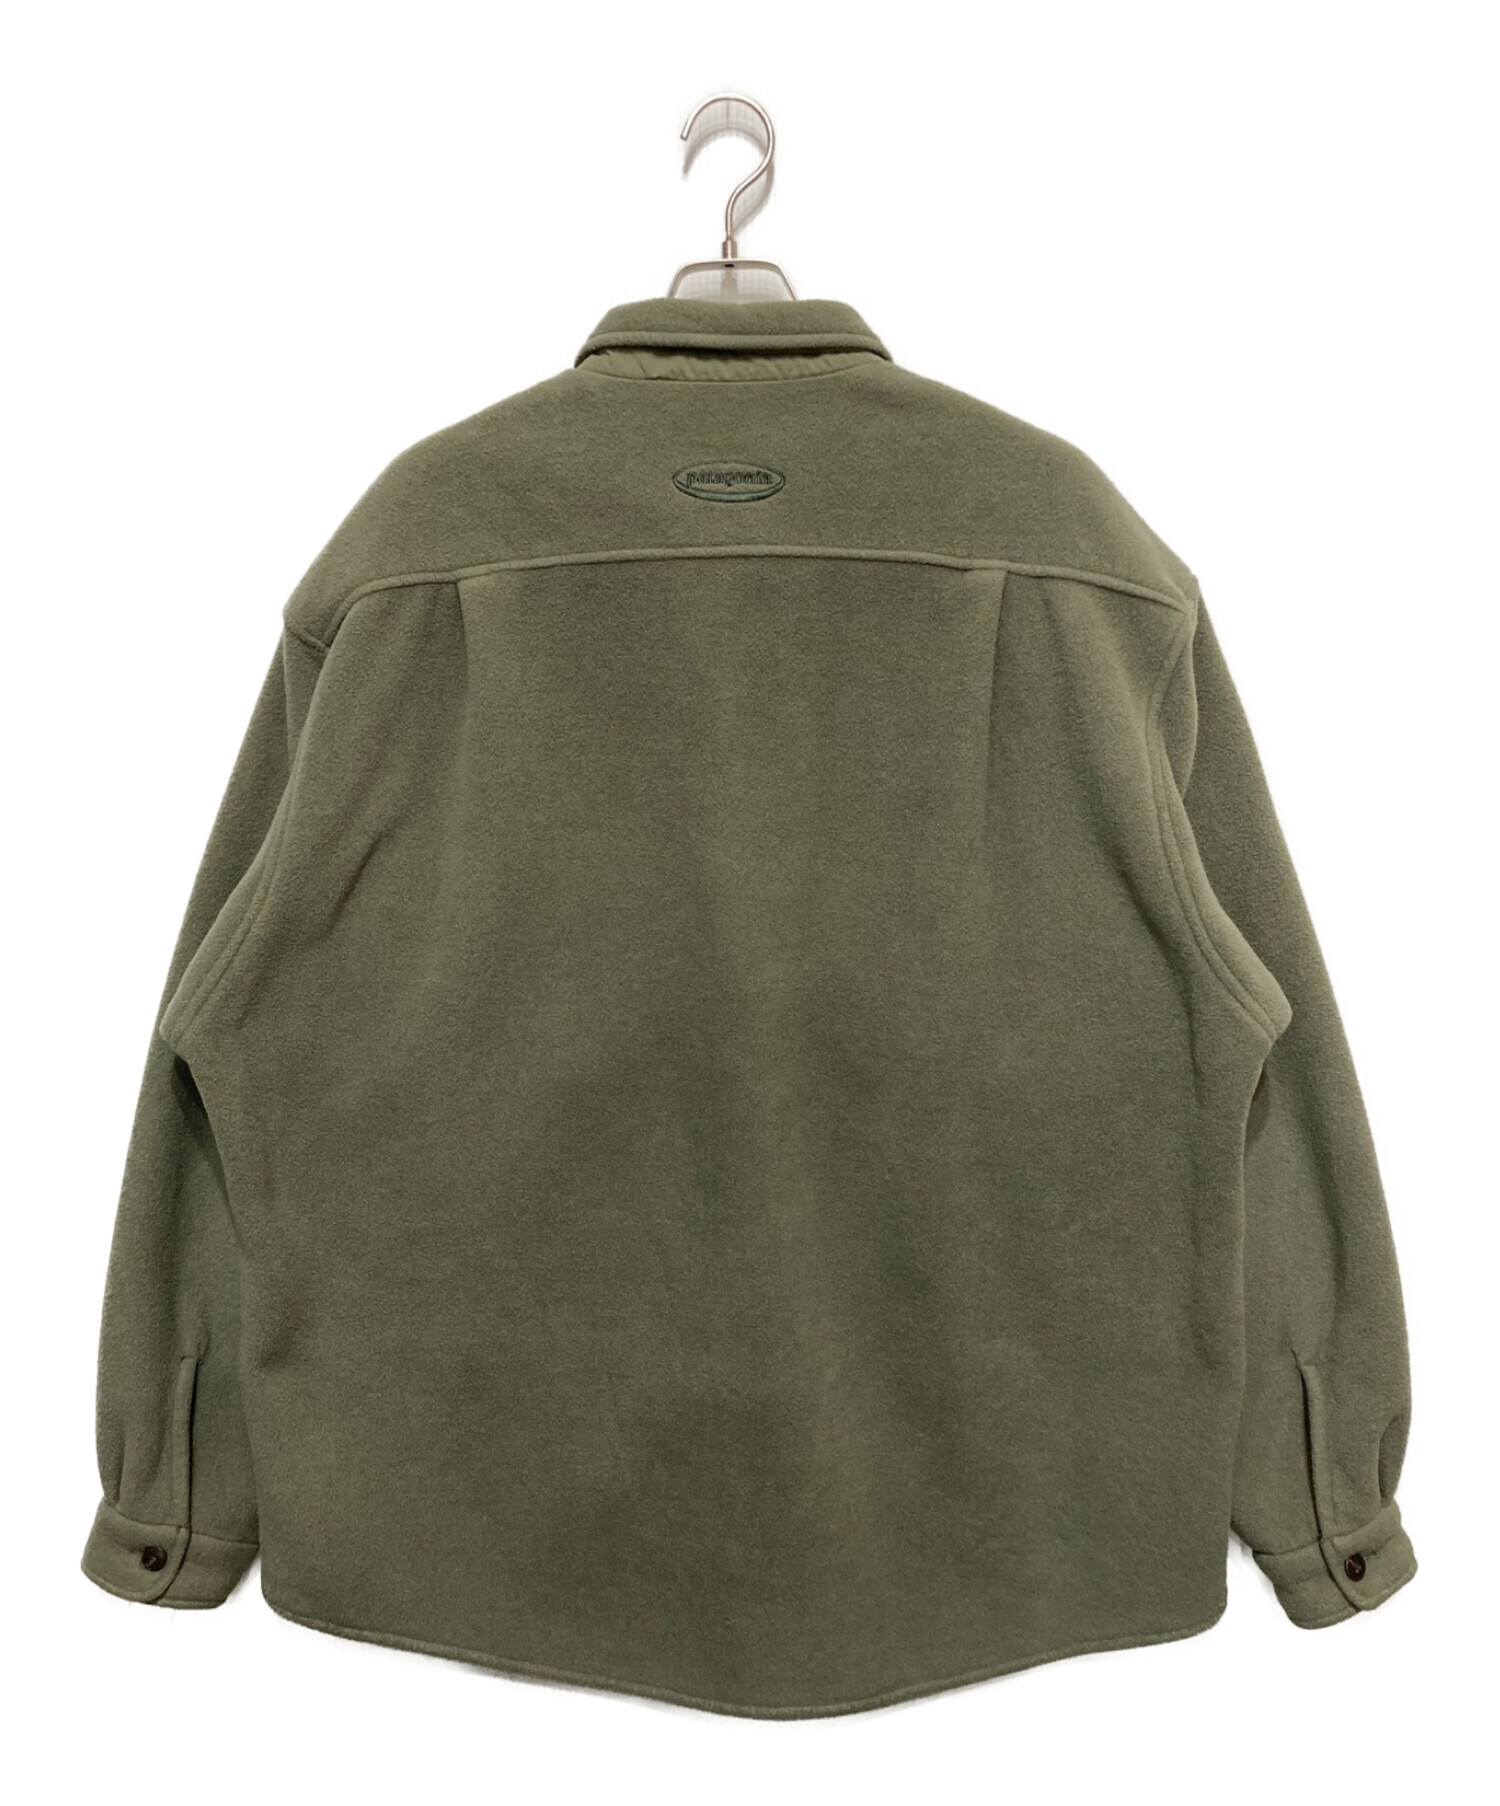 Patagonia (パタゴニア) フリースシャツジャケット グレー サイズ:L